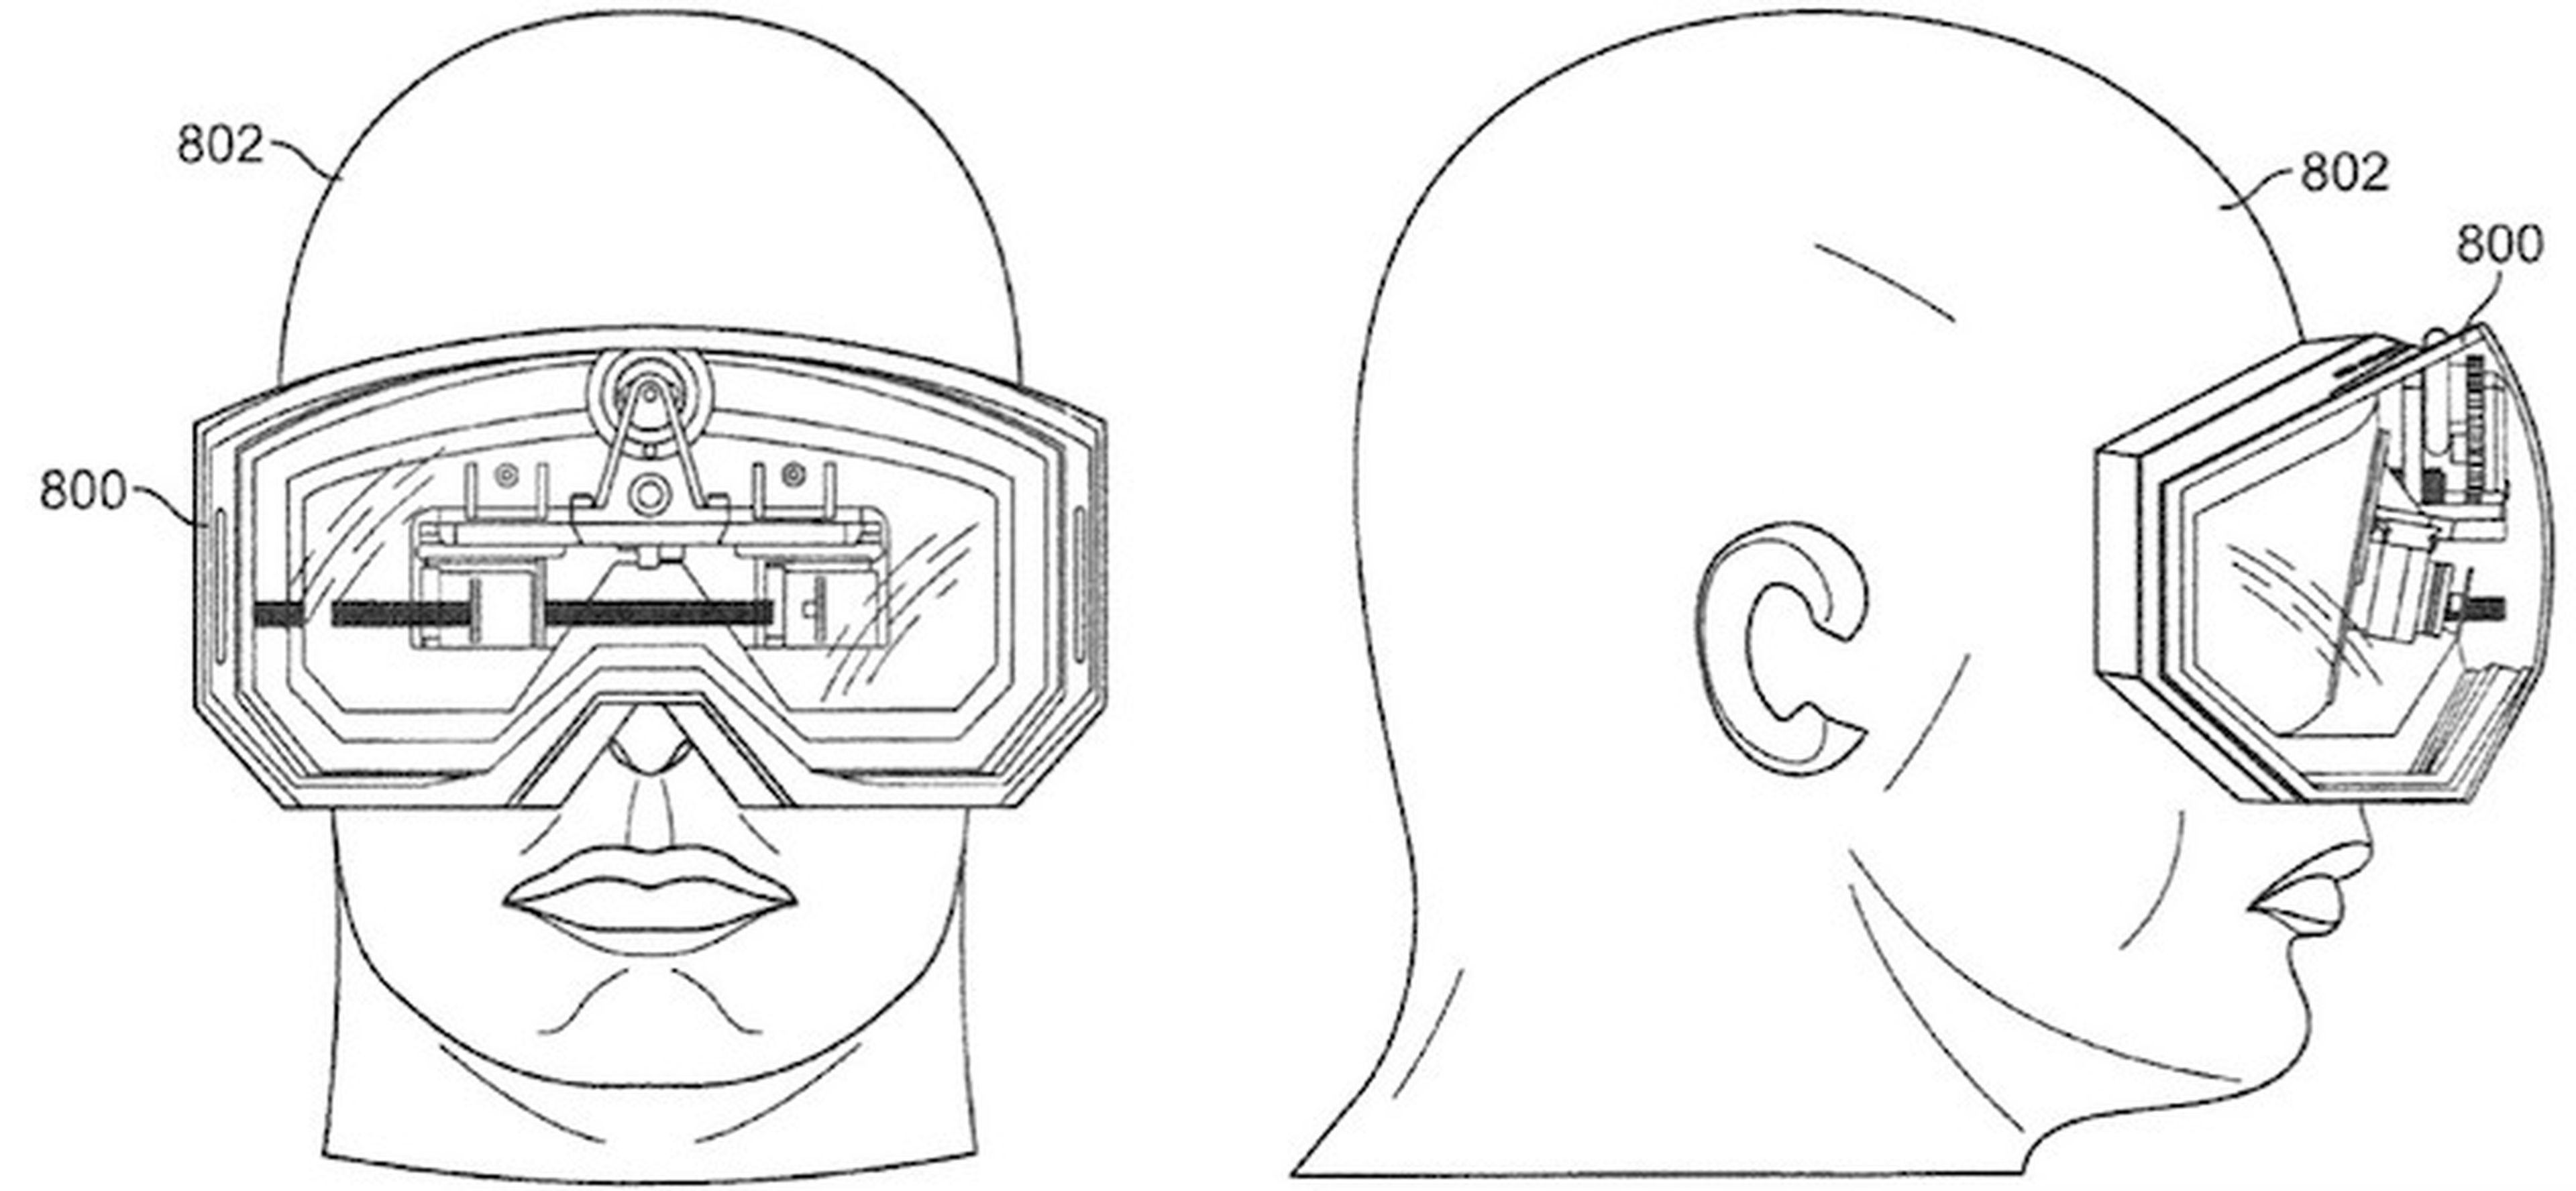 Prototipo de cascos de realidad virtual de Apple